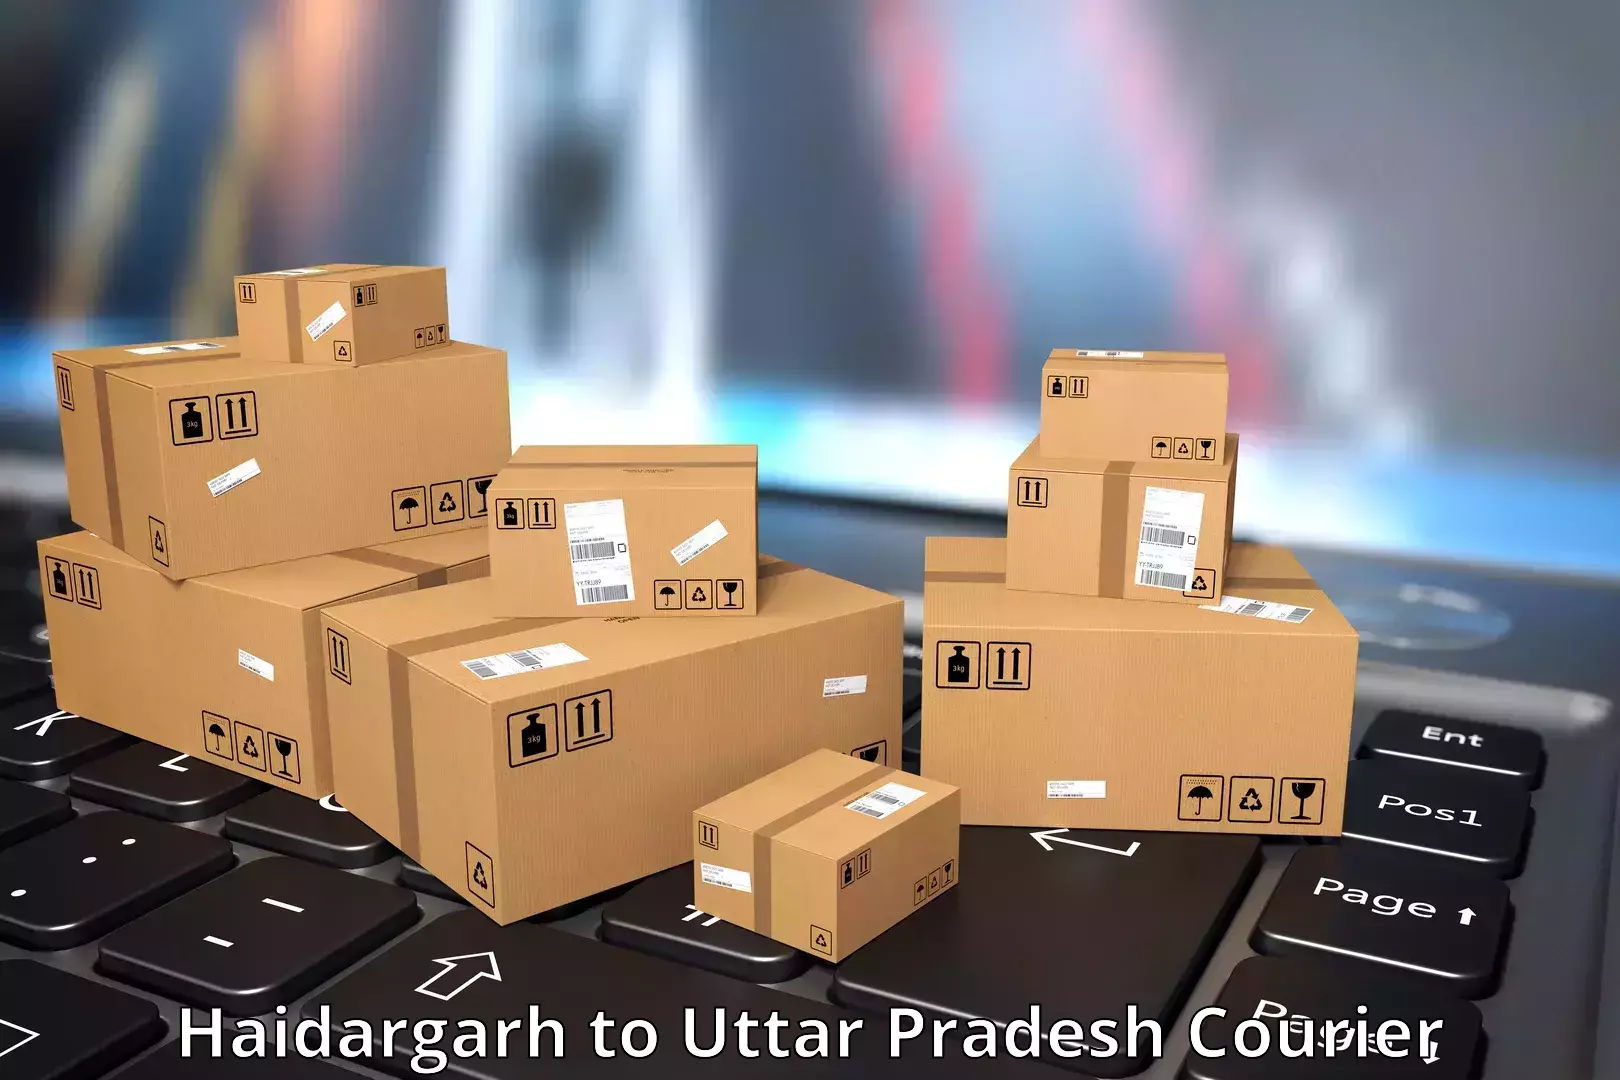 Global shipping networks Haidargarh to Karchhana